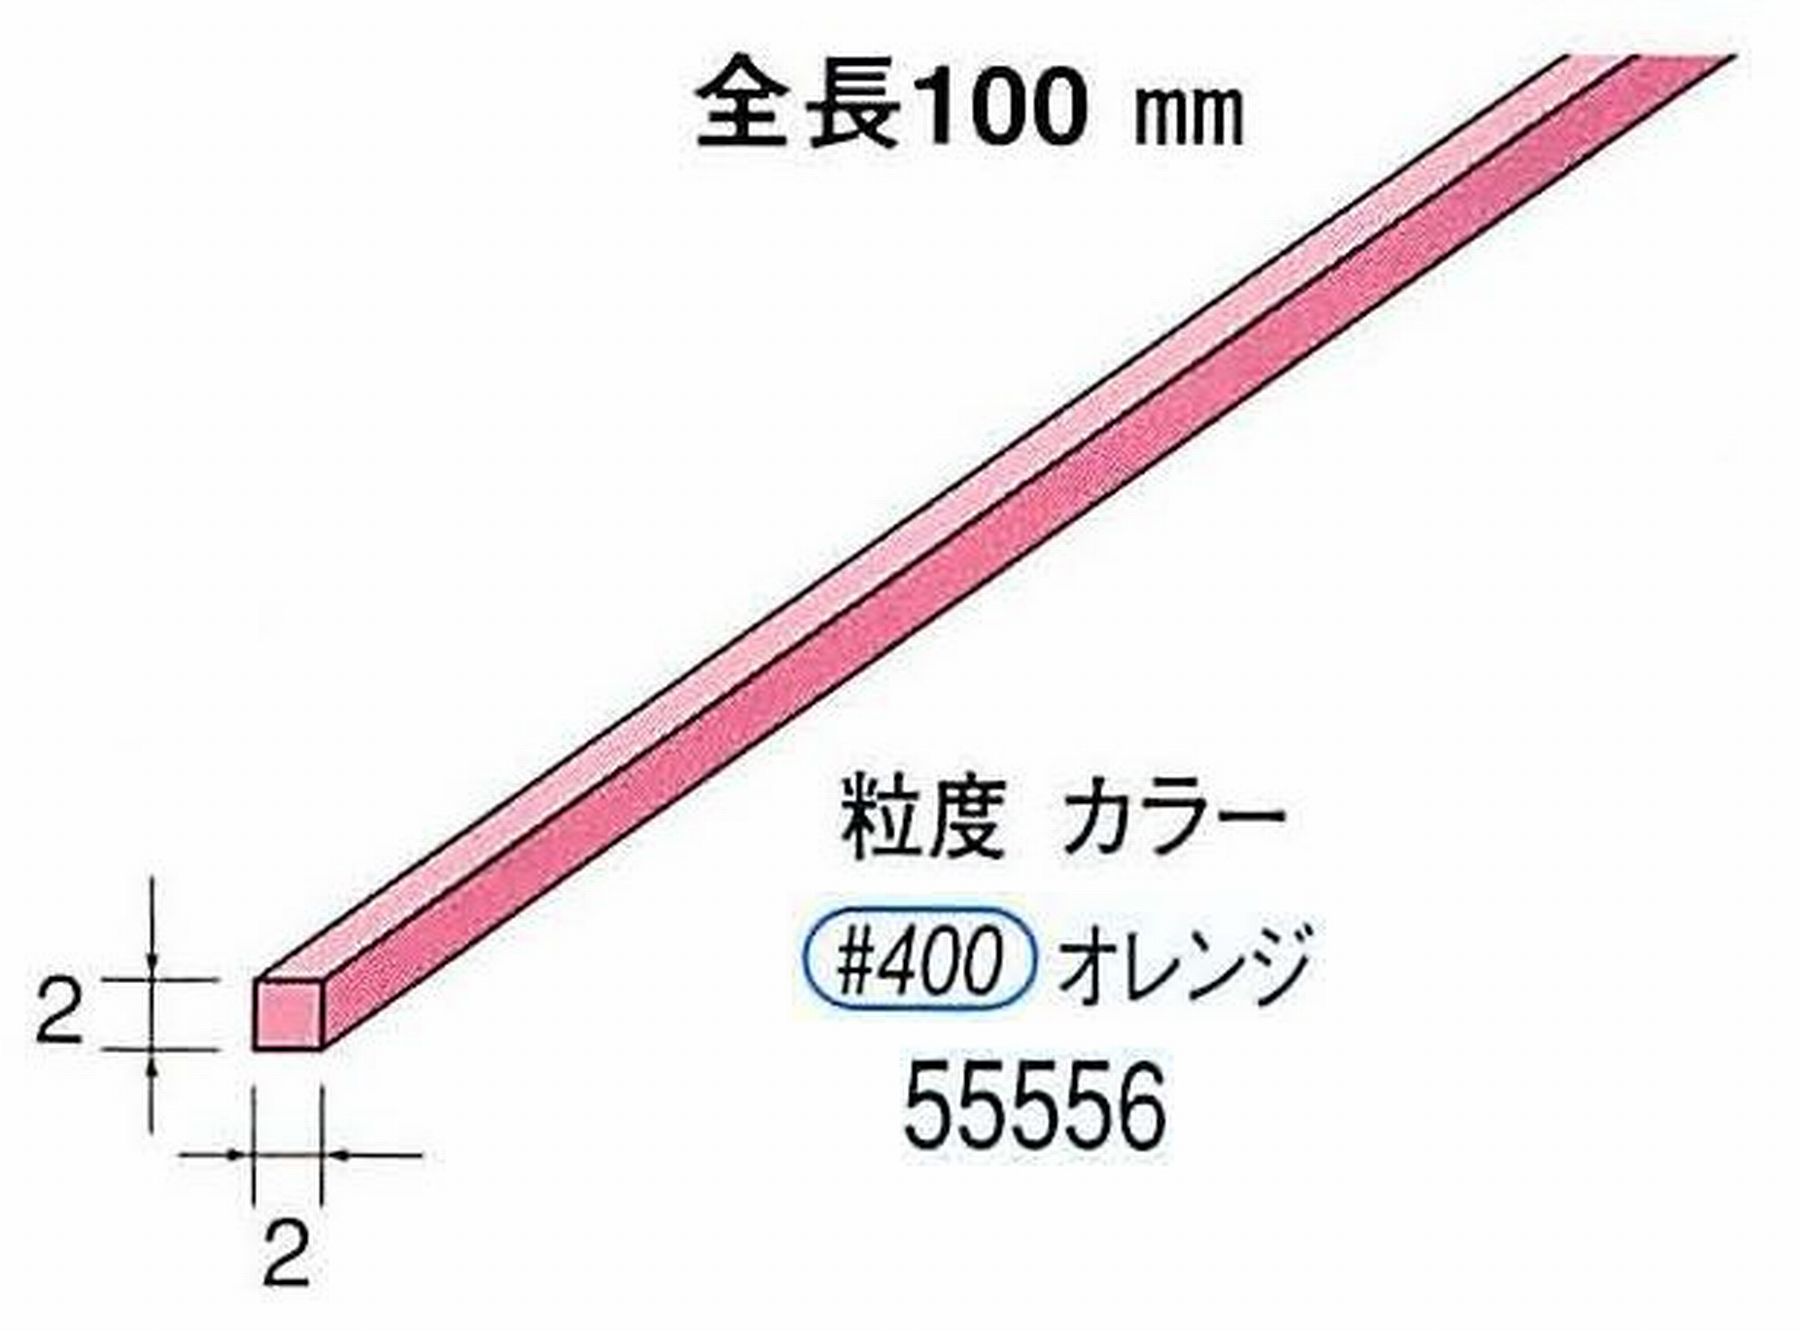 ナカニシ/NAKANISHI セラファイバー砥石 全長100mm オレンジ 55556